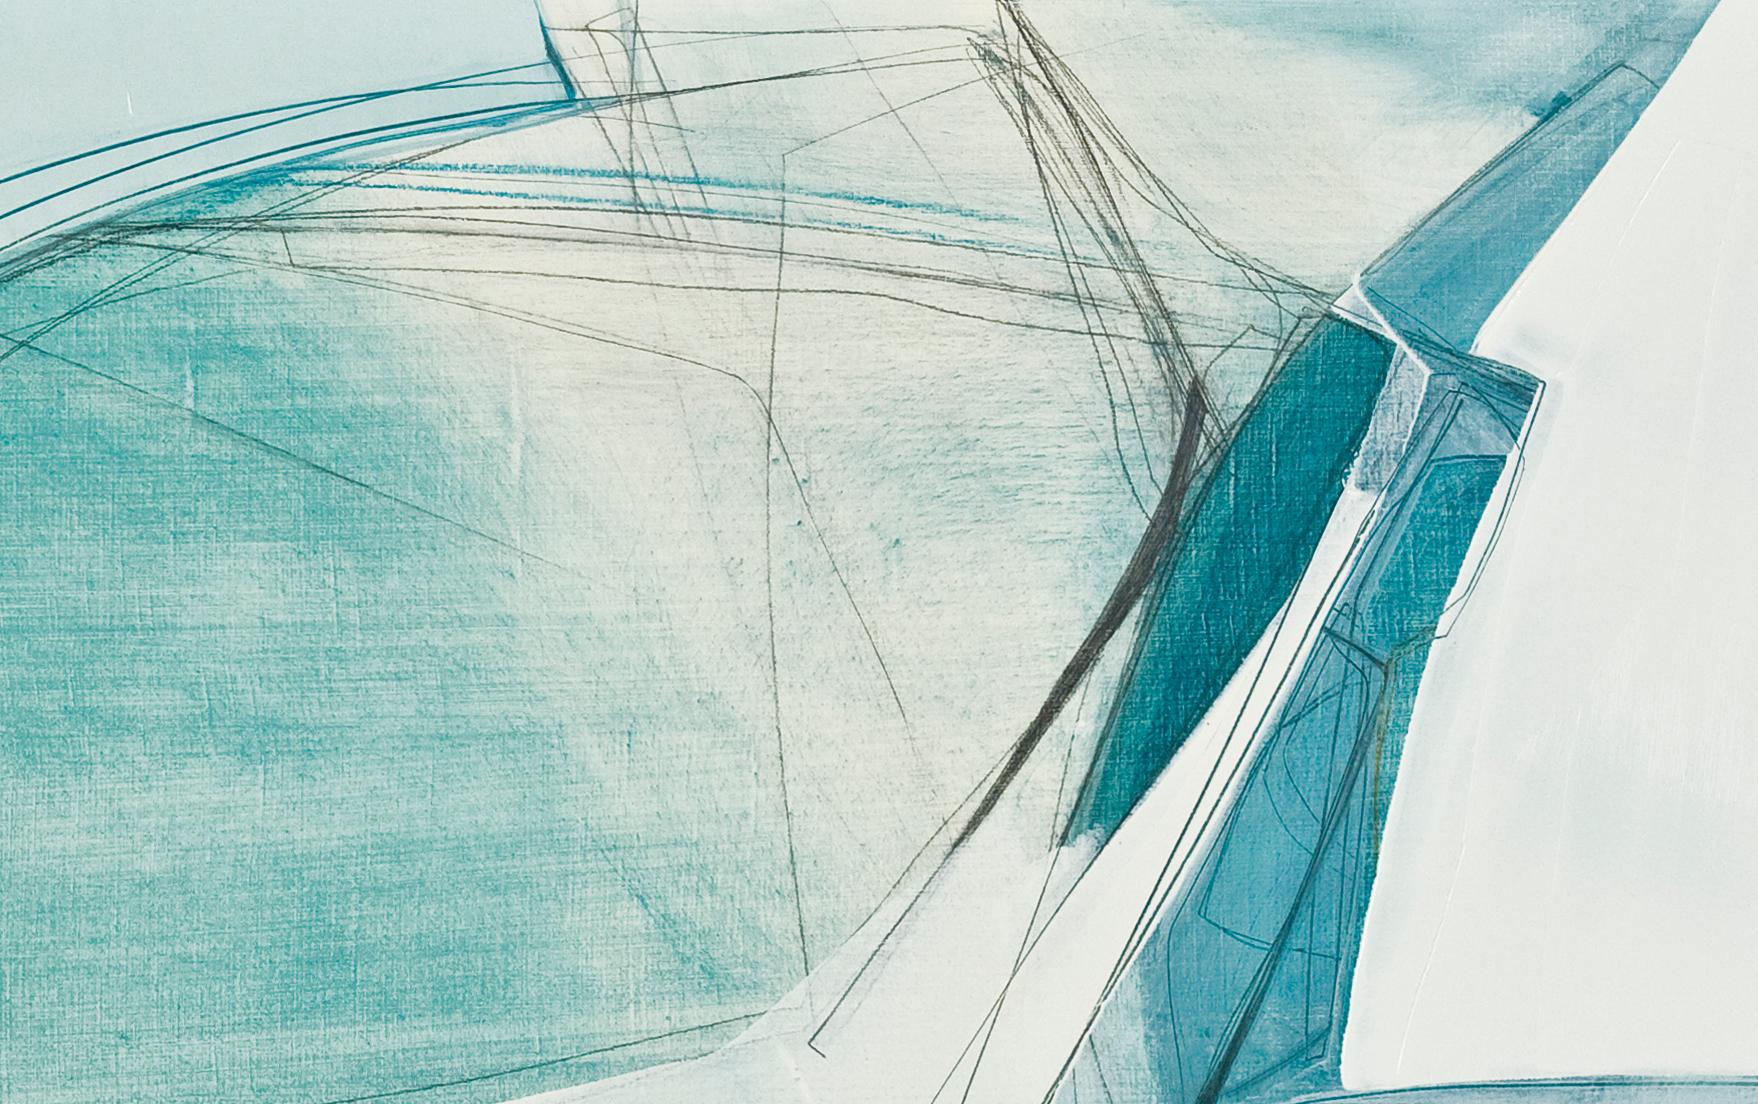 Convergence in Blue de Rose Umerlik est une peinture abstraite, huile et graphite sur panneau de bois, 24 x 38.

Rose S. extrait les moments émotionnels intangibles qui vivent dans notre psyché humaine collective et les interprète de manière